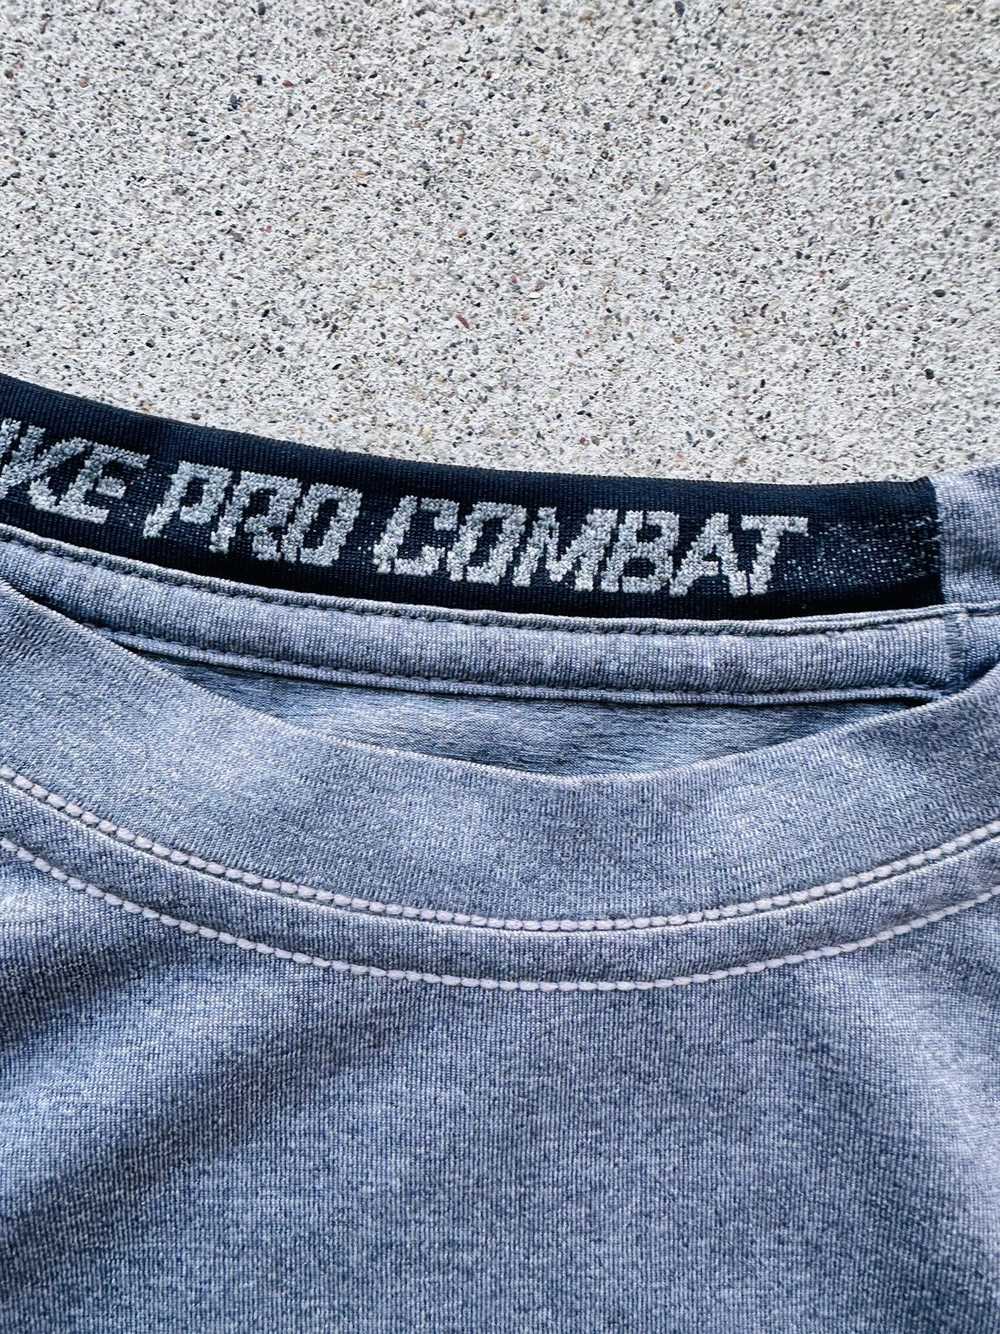 Nike Nike Pro Combat Dri-FIT Tight Short-Sleeve T… - image 4